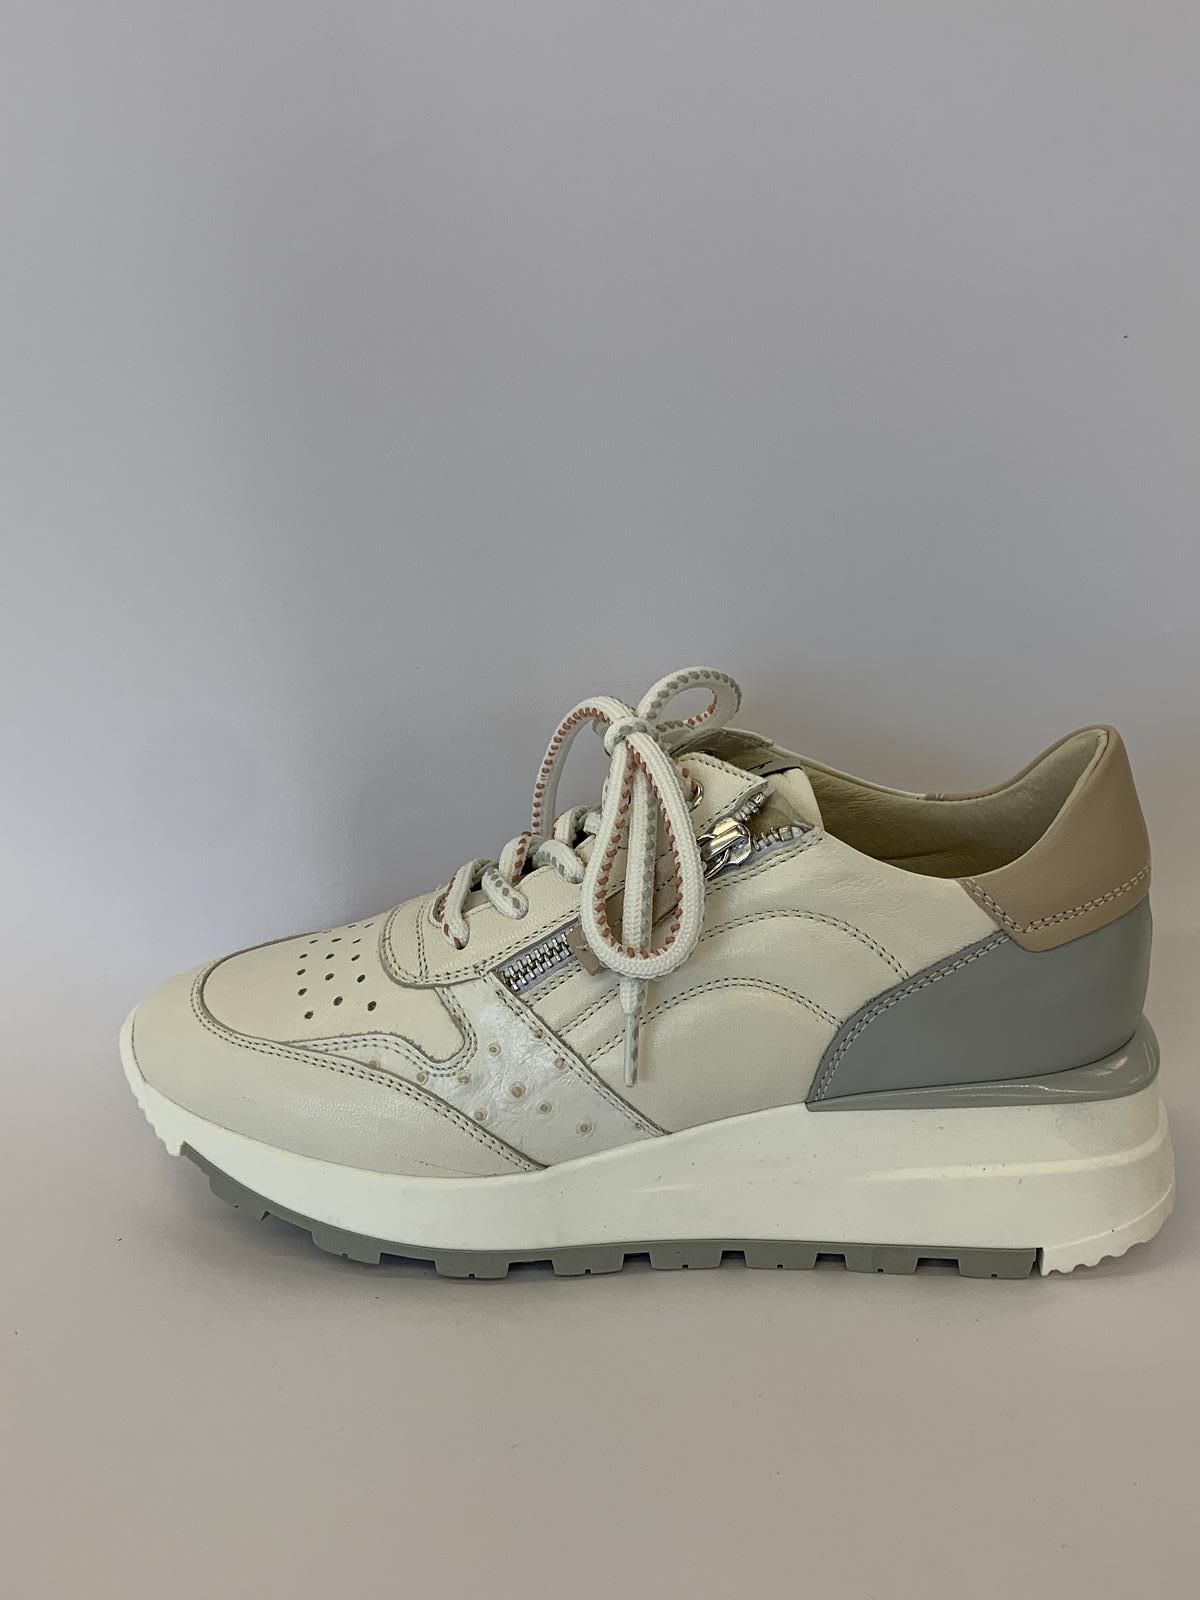 DL Sport Sneaker Wit+kleur dames (Veter Wit/Rose Perfo - 5280) - Schoenen Luca